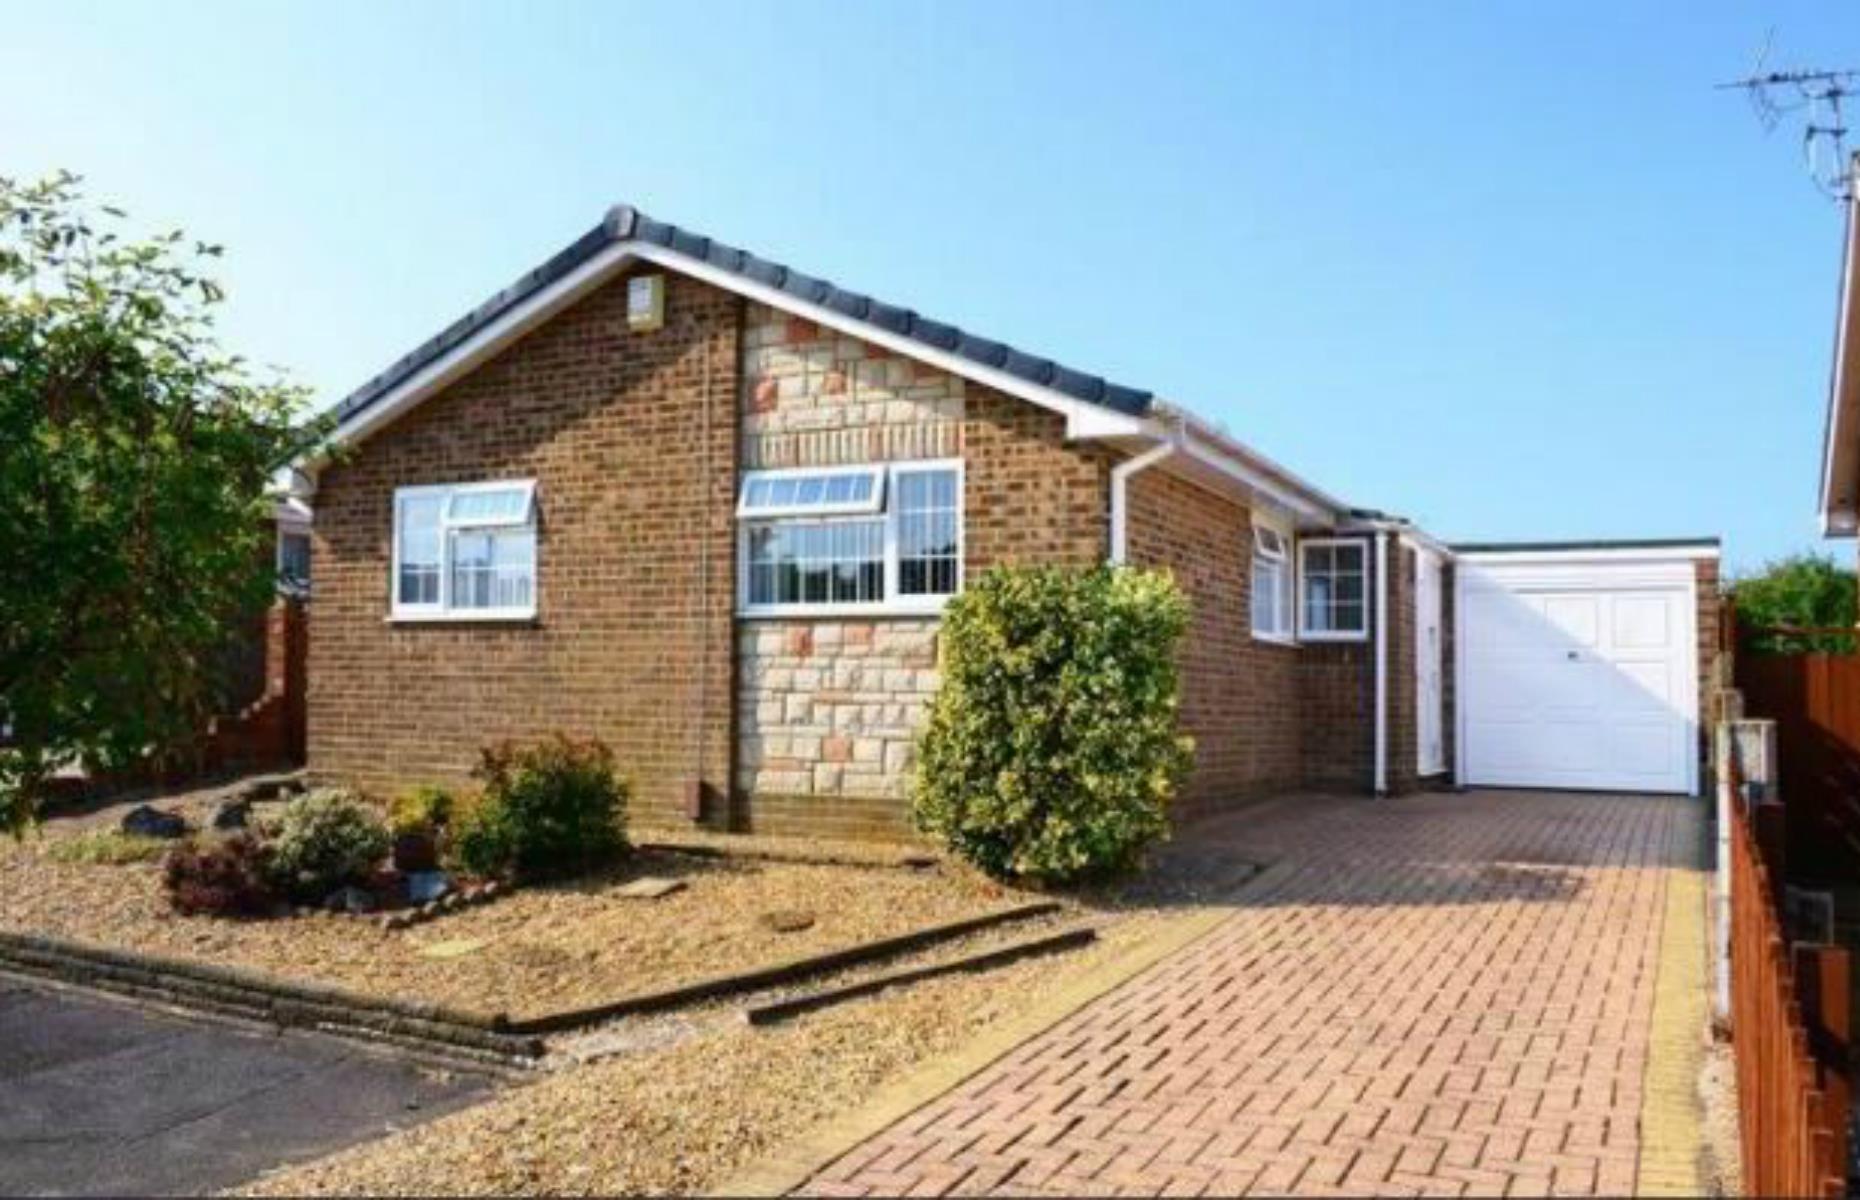 Dorset – average house price: £318,415